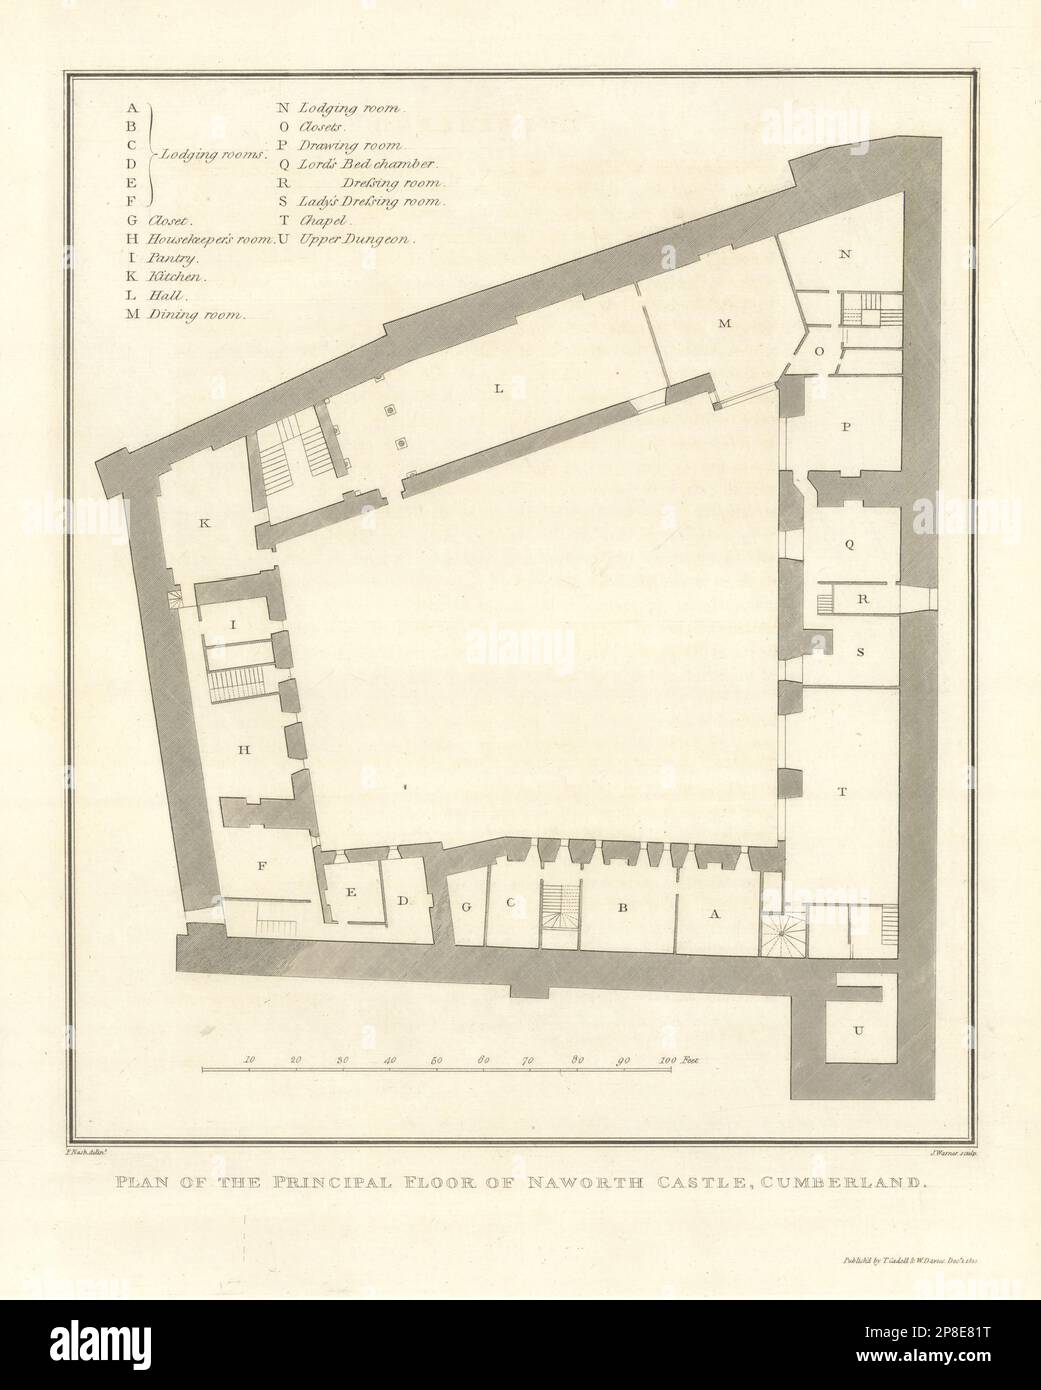 Grundriss des Erdgeschosses von Naworth Castle, Cumberland. Karte von Cumbria 1816 Stockfoto